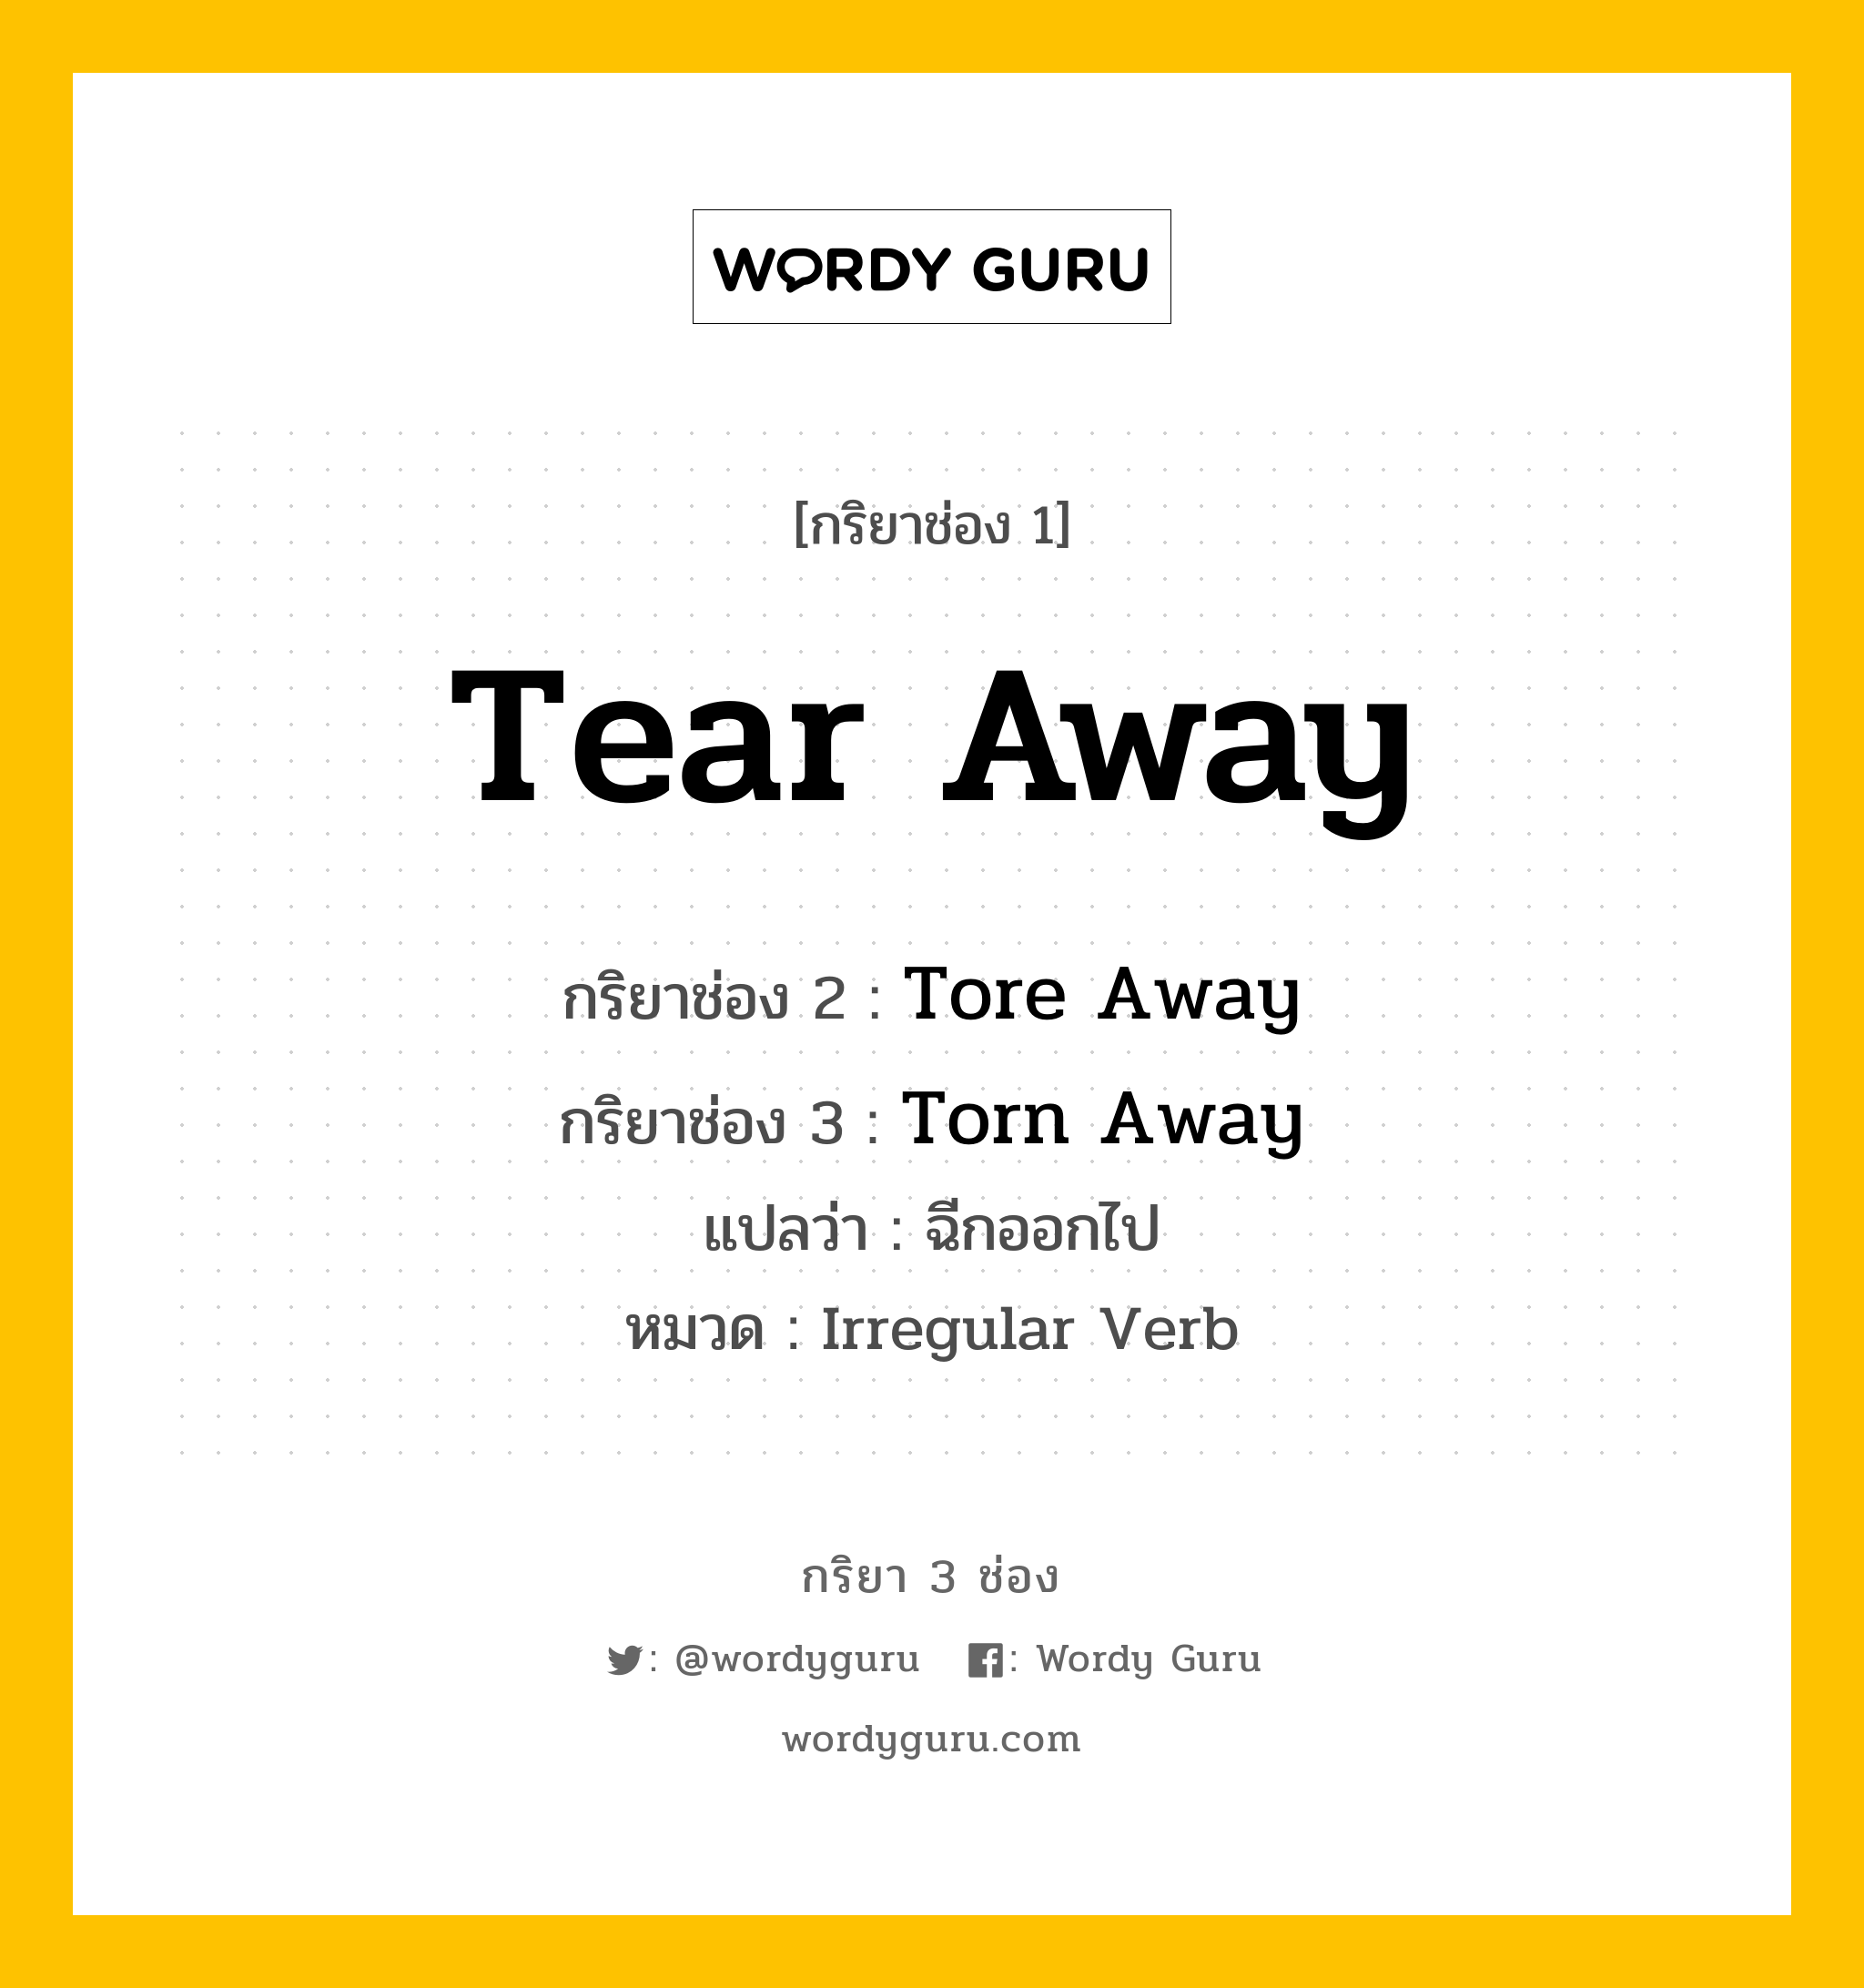 กริยา 3 ช่อง ของ Tear Away คืออะไร? มาดูคำอ่าน คำแปลกันเลย, กริยาช่อง 1 Tear Away กริยาช่อง 2 Tore Away กริยาช่อง 3 Torn Away แปลว่า ฉีกออกไป หมวด Irregular Verb หมวด Irregular Verb